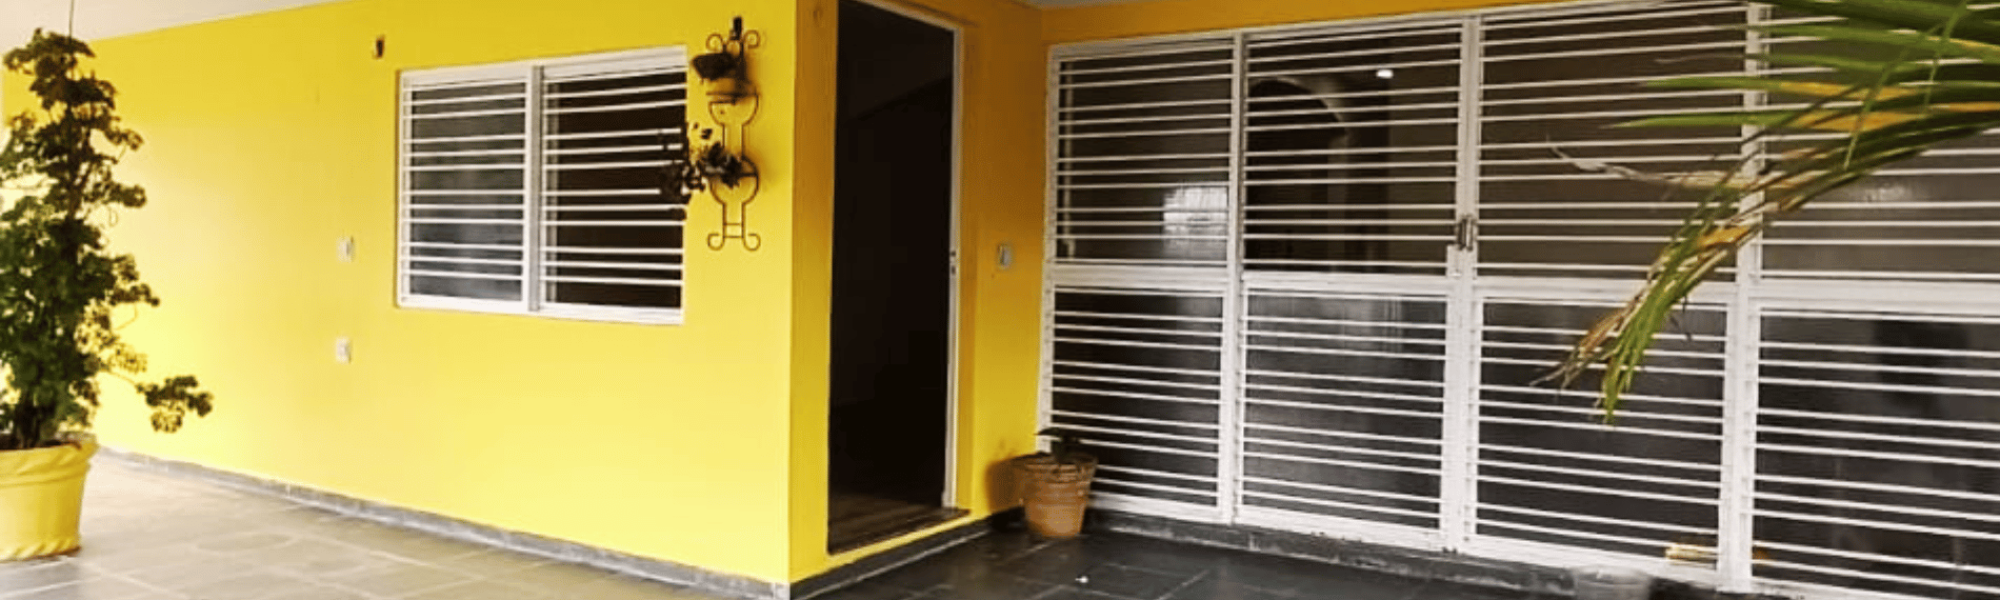 CÓD. 240 - RUA DO CAJUEIRO - Gabriel Alessander Imóveis - Imobiliária em Boa Vista Roraima